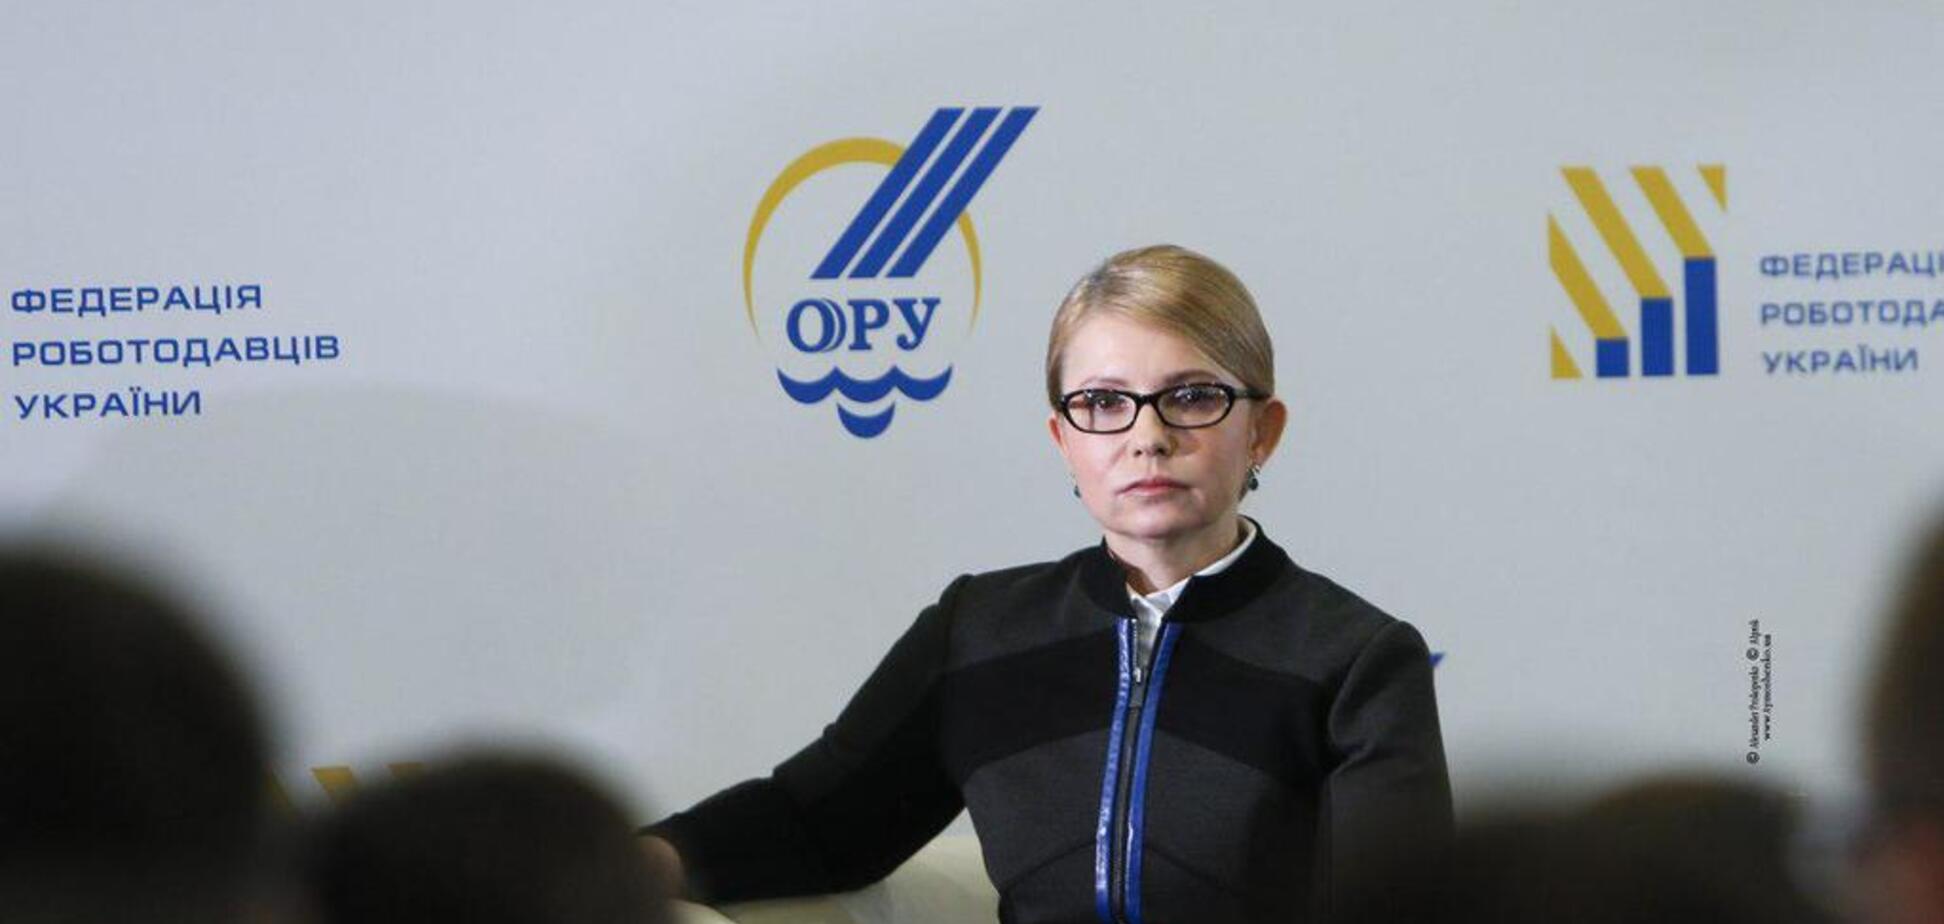 Работодатели поддержали Юлию Тимошенко: заключен Меморандум о сотрудничестве